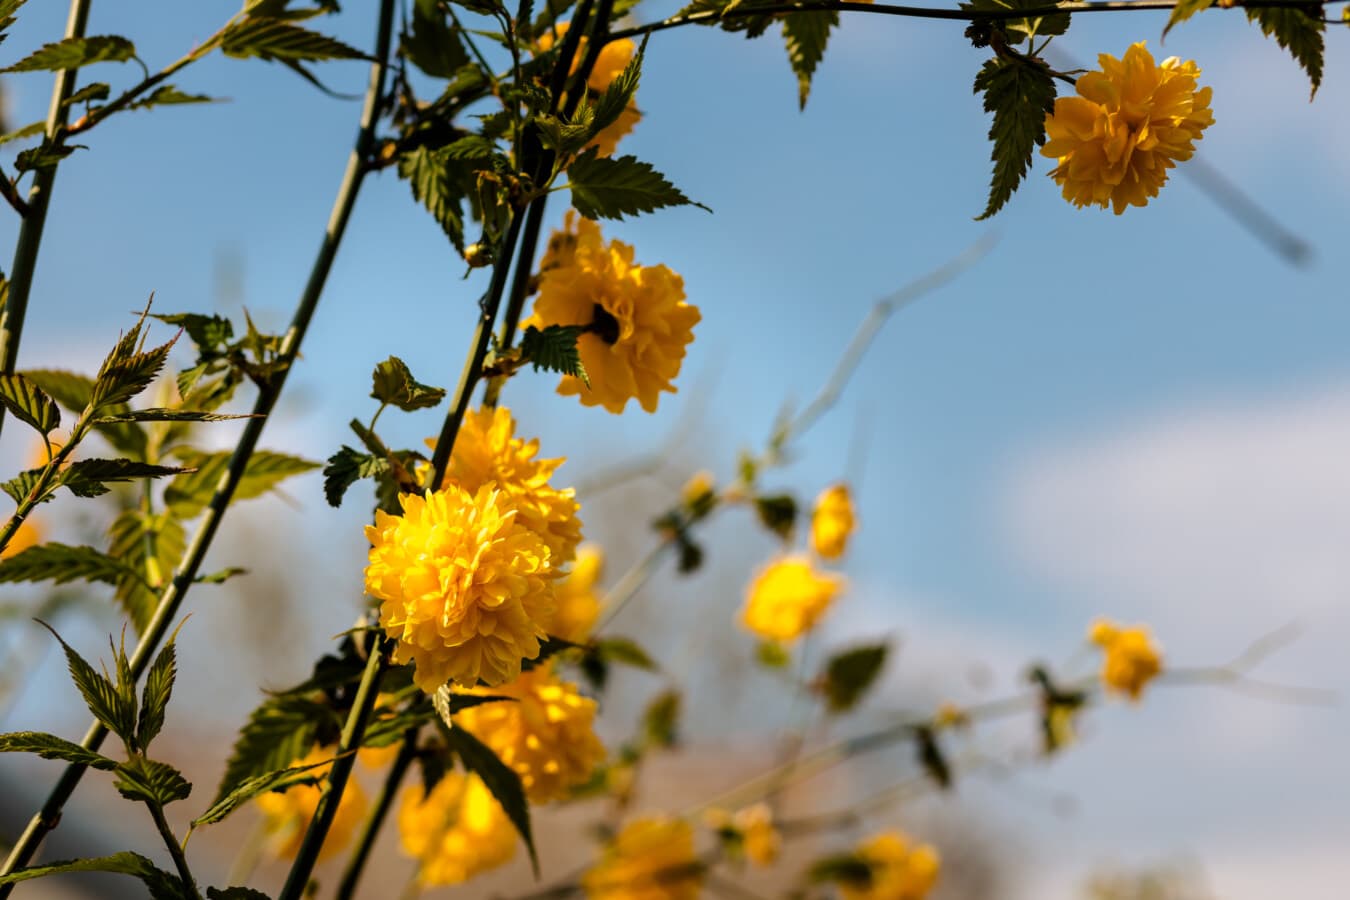 flores, amarelo alaranjado, brilhante, flor em botão, folha, folhas, planta, árvore, sol, temporada